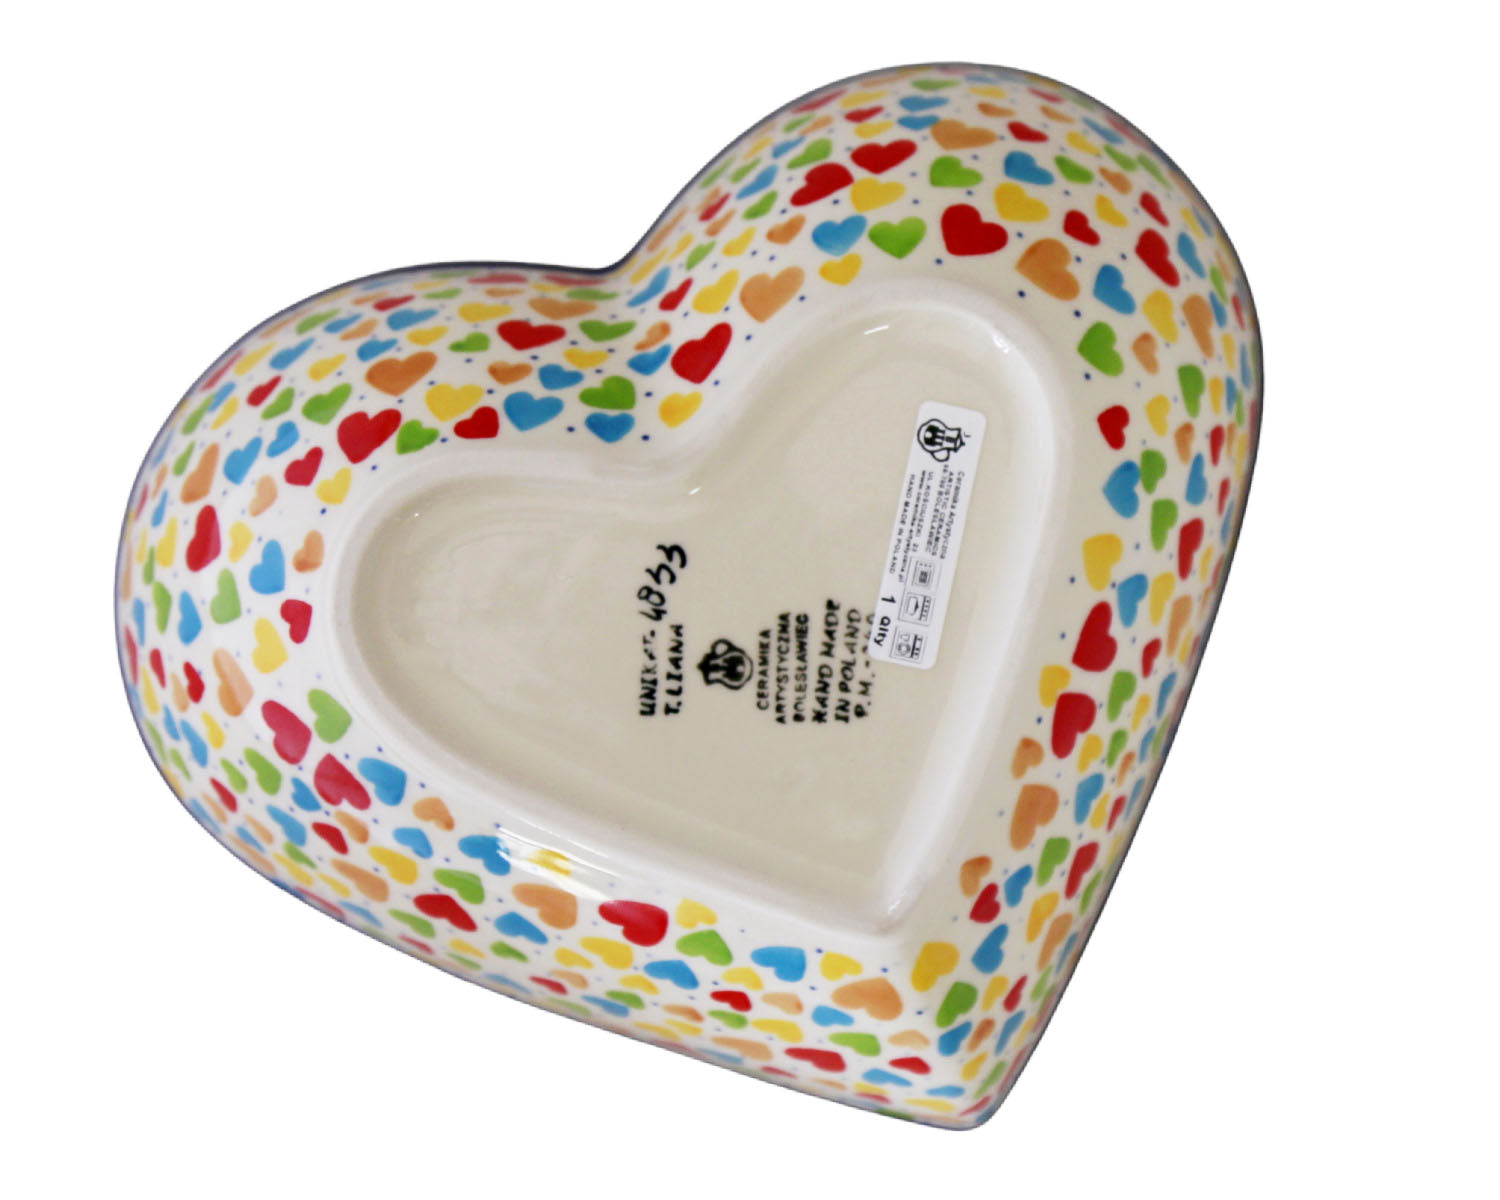 Unikat Large Heart Bowl